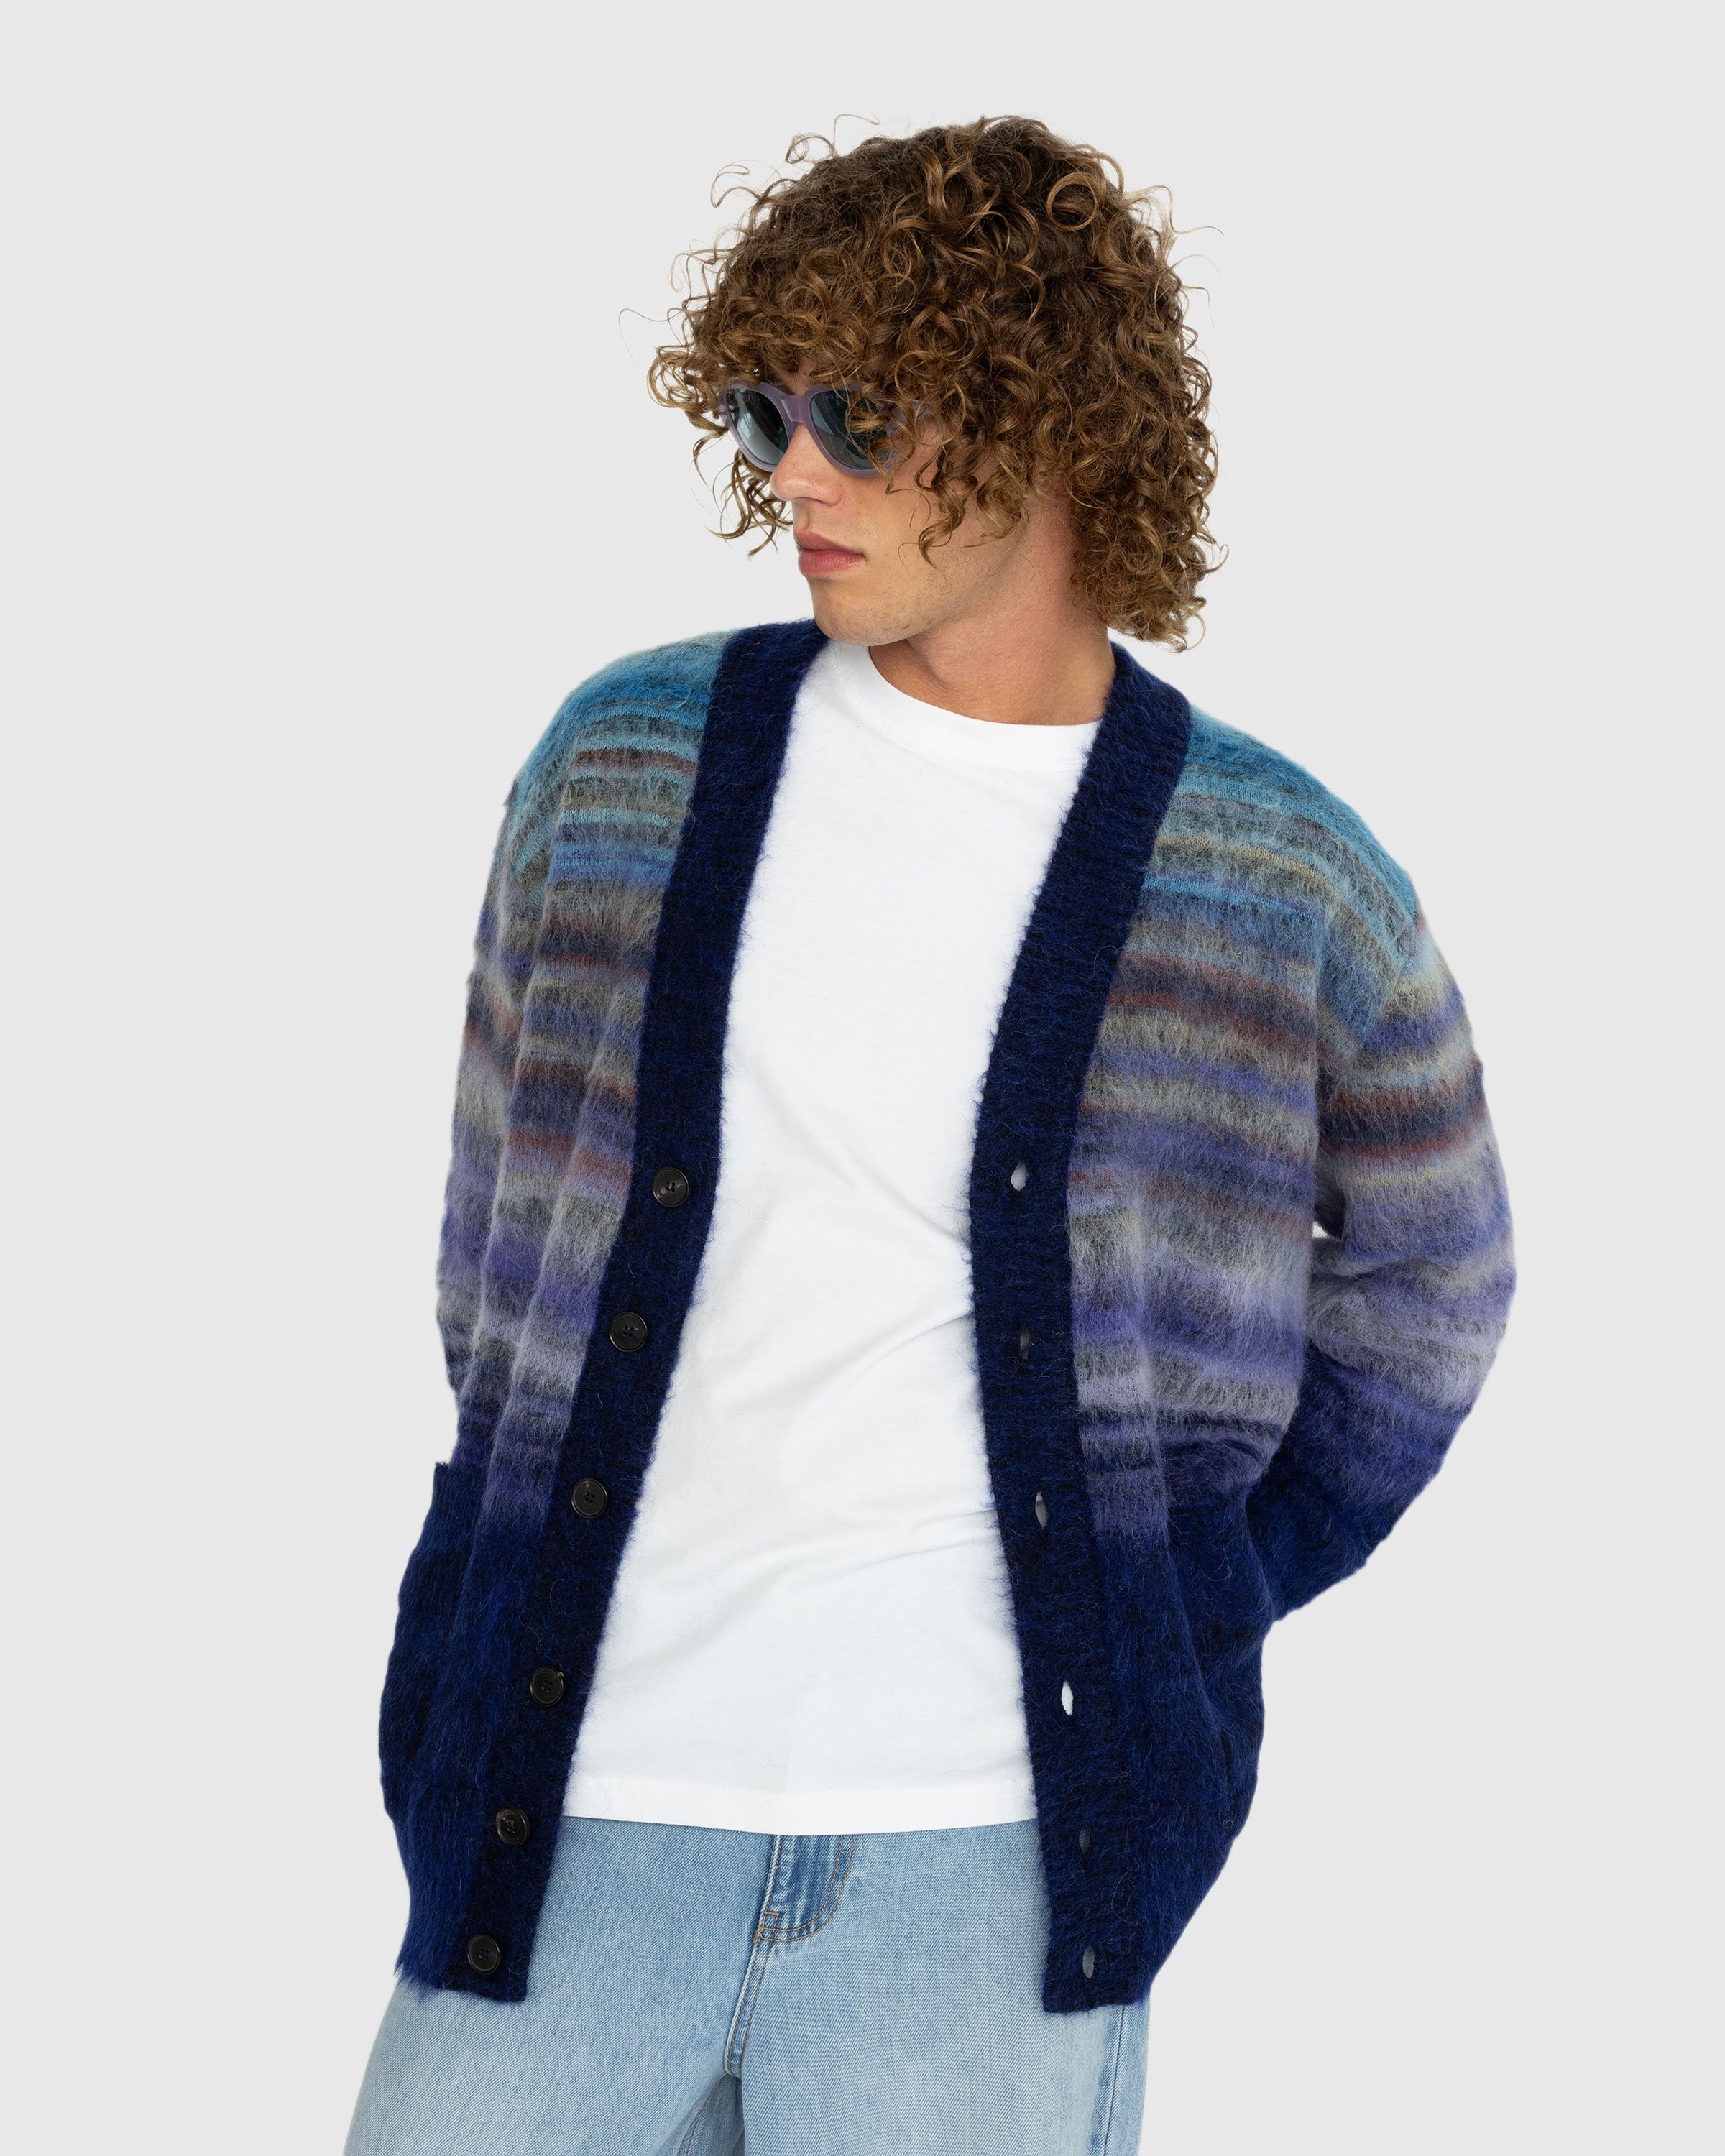 Missoni - Wool Cardigan Multi - Clothing - Multi - Image 2